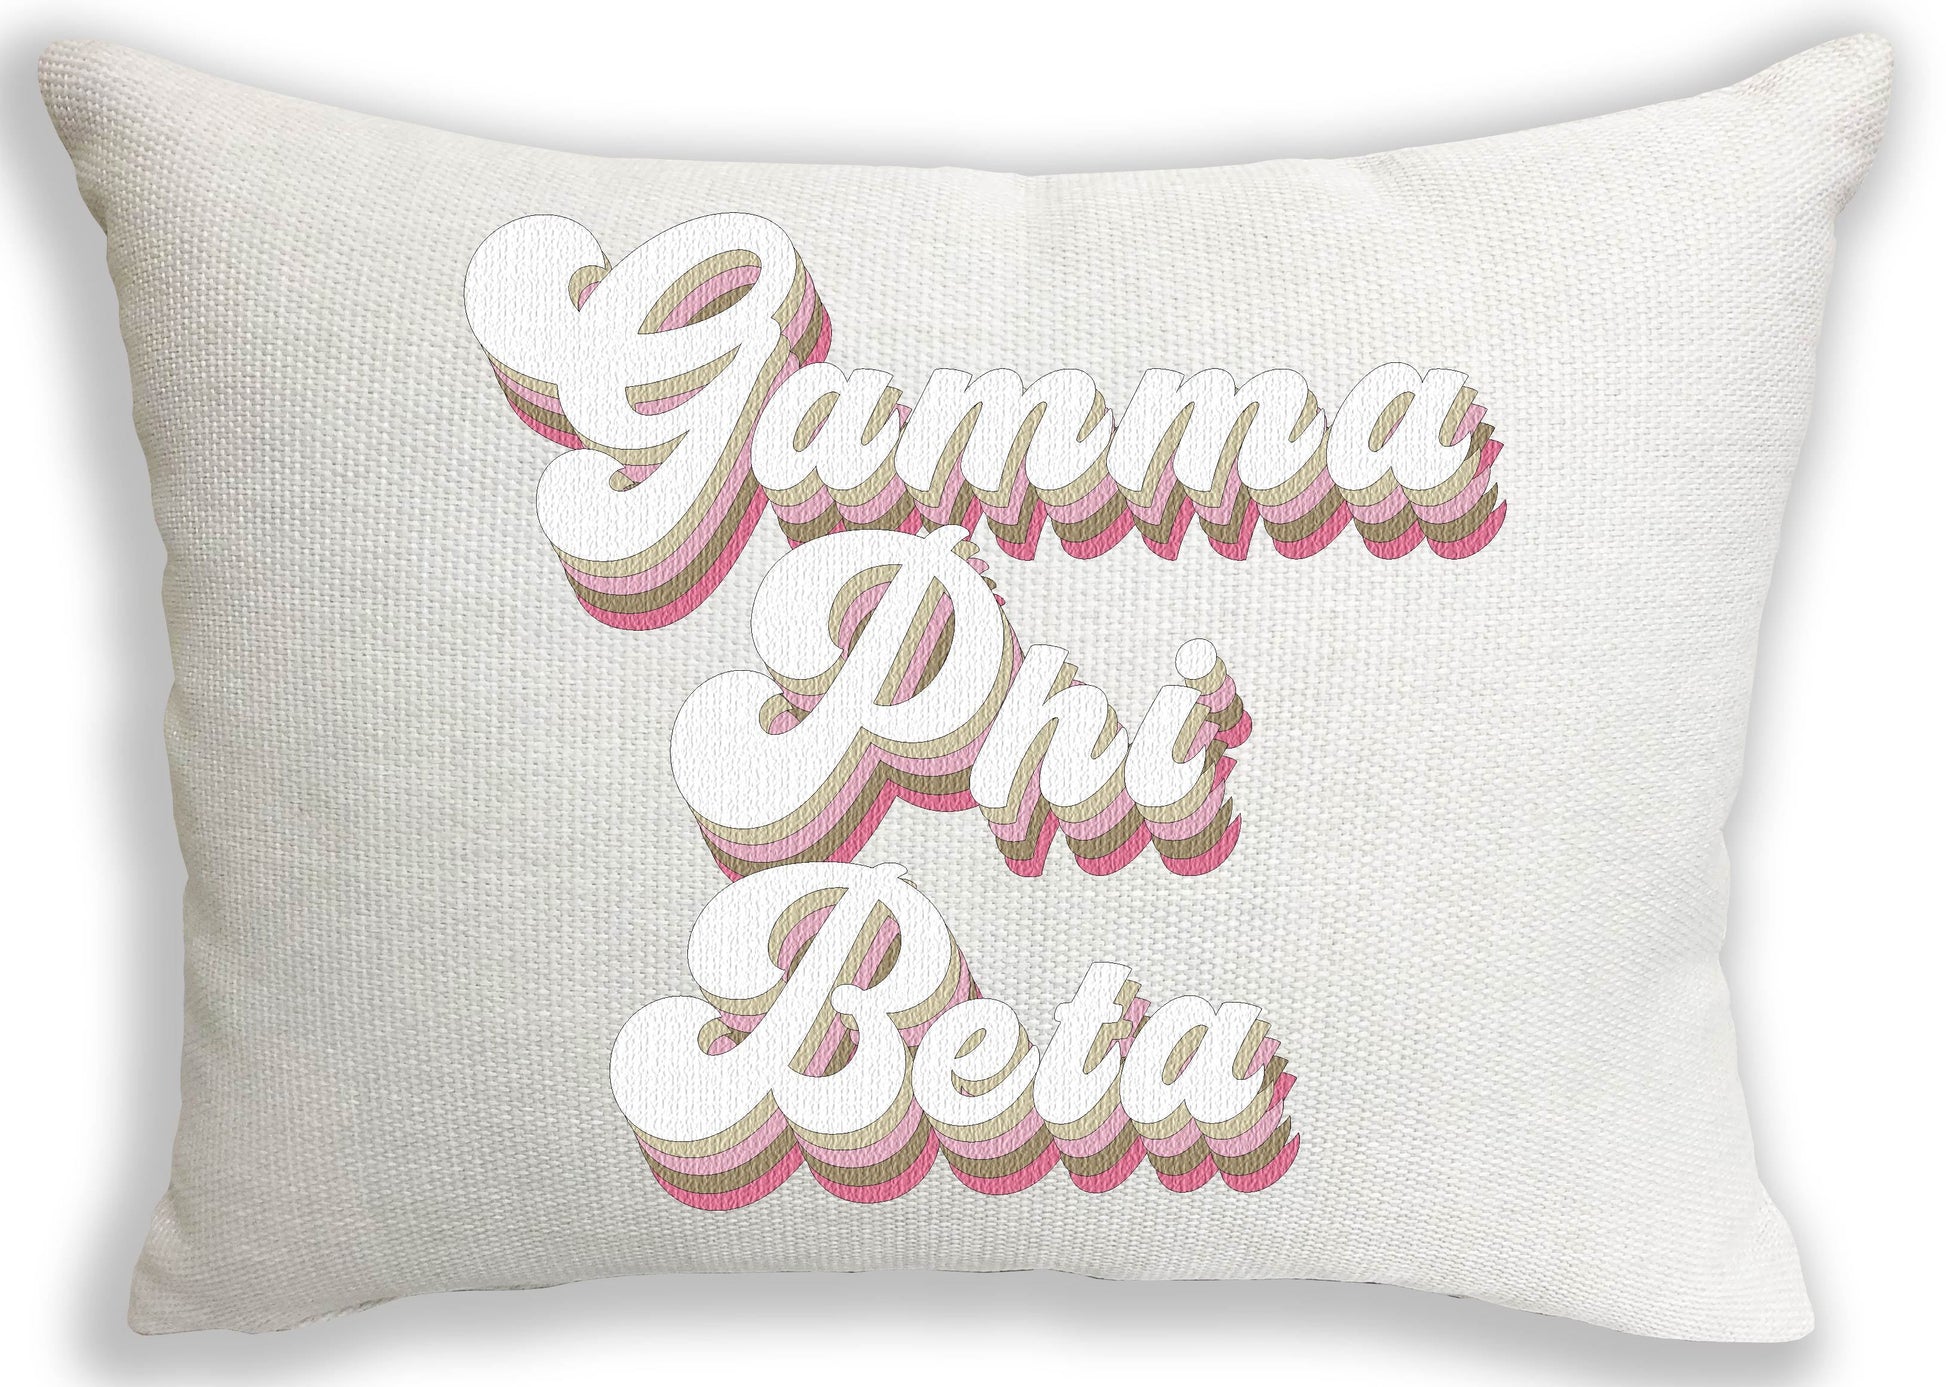 Gamma Phi Beta Retro Throw Pillow - Virginia Book Company